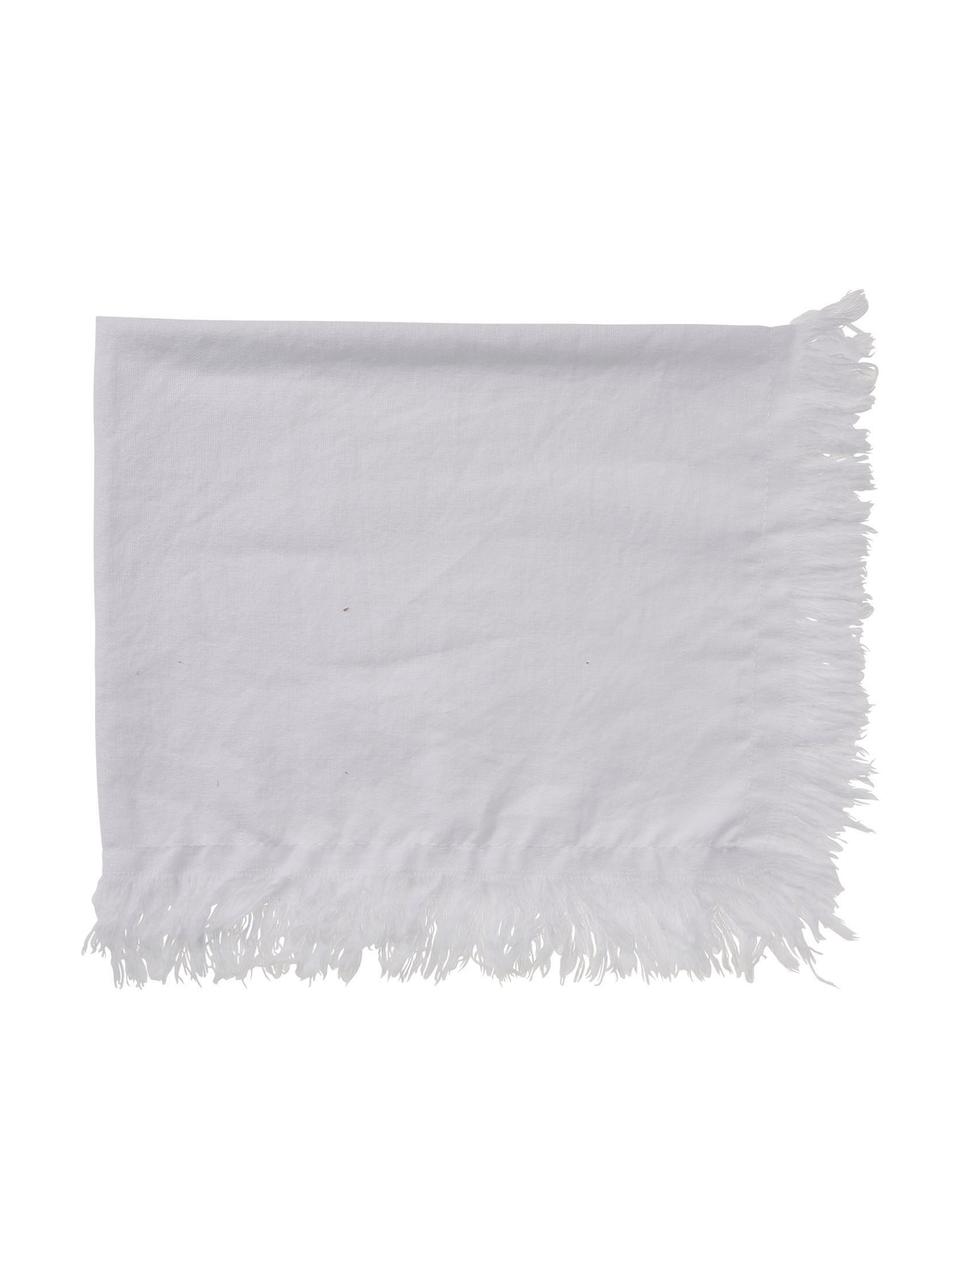 Podkładka z bawełny z frędzlami Nalia, 100% bawełna, Biały, S 50 x D 40 cm